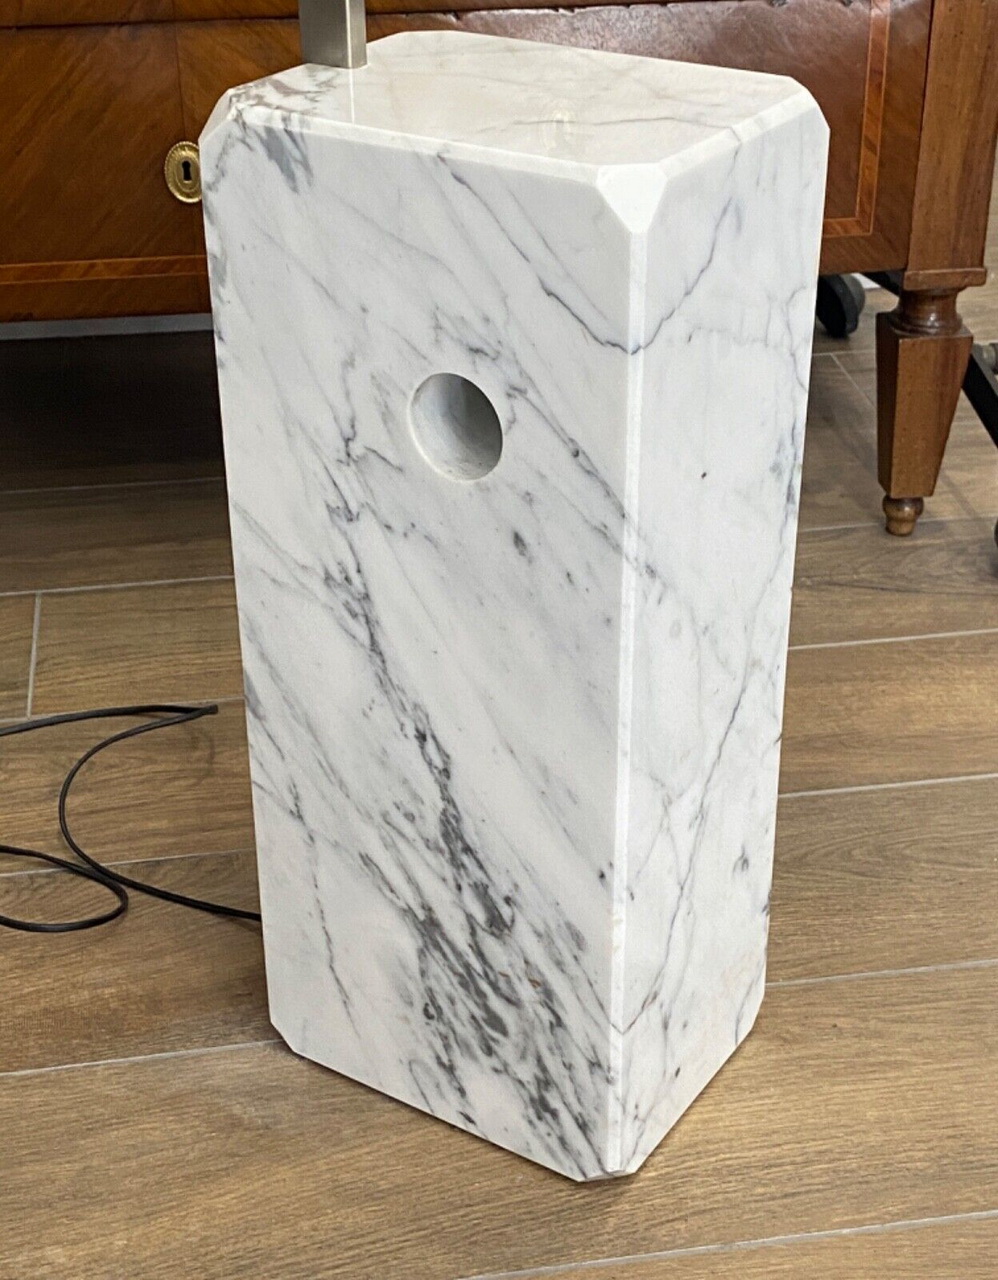 Lampada da terra FLOS modello “Arco” del 1962 di Achille e Pier Giacomo Castiglioni – Dettaglio della base in marmo